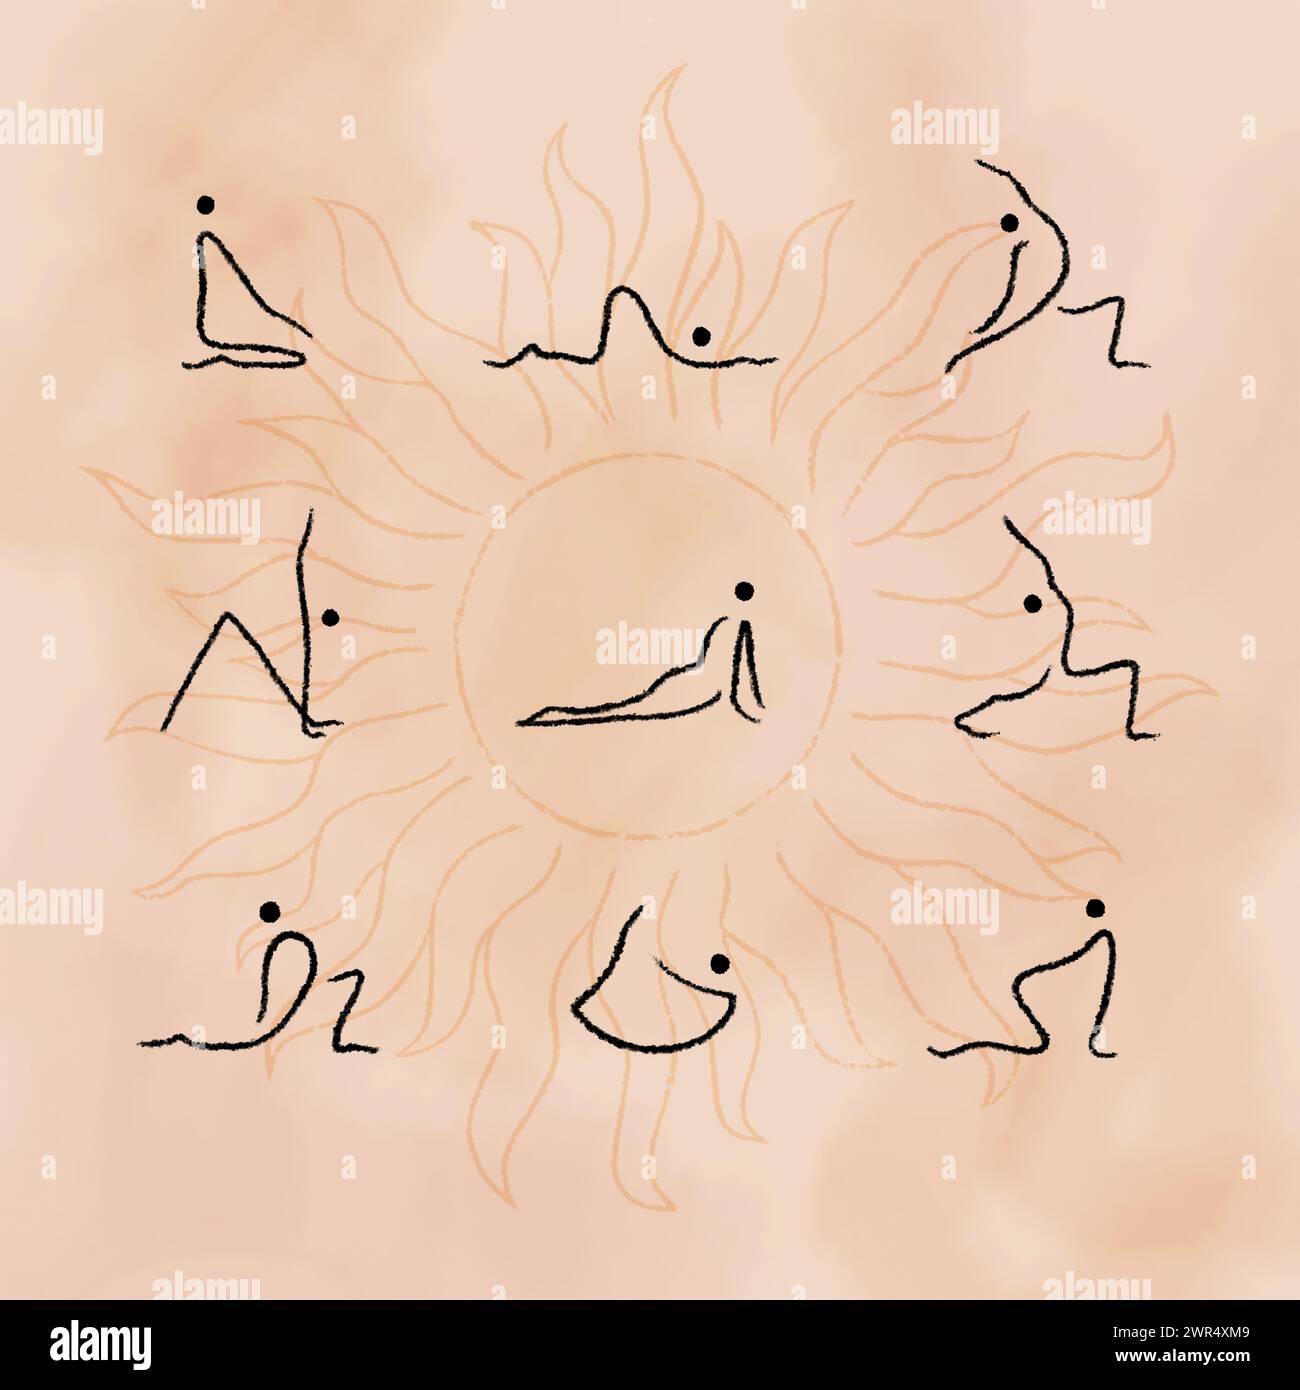 Ensemble de poses Hatha yoga. Yogi dans différentes asanas. Affiche infographique simple et minimaliste Illustration de Vecteur